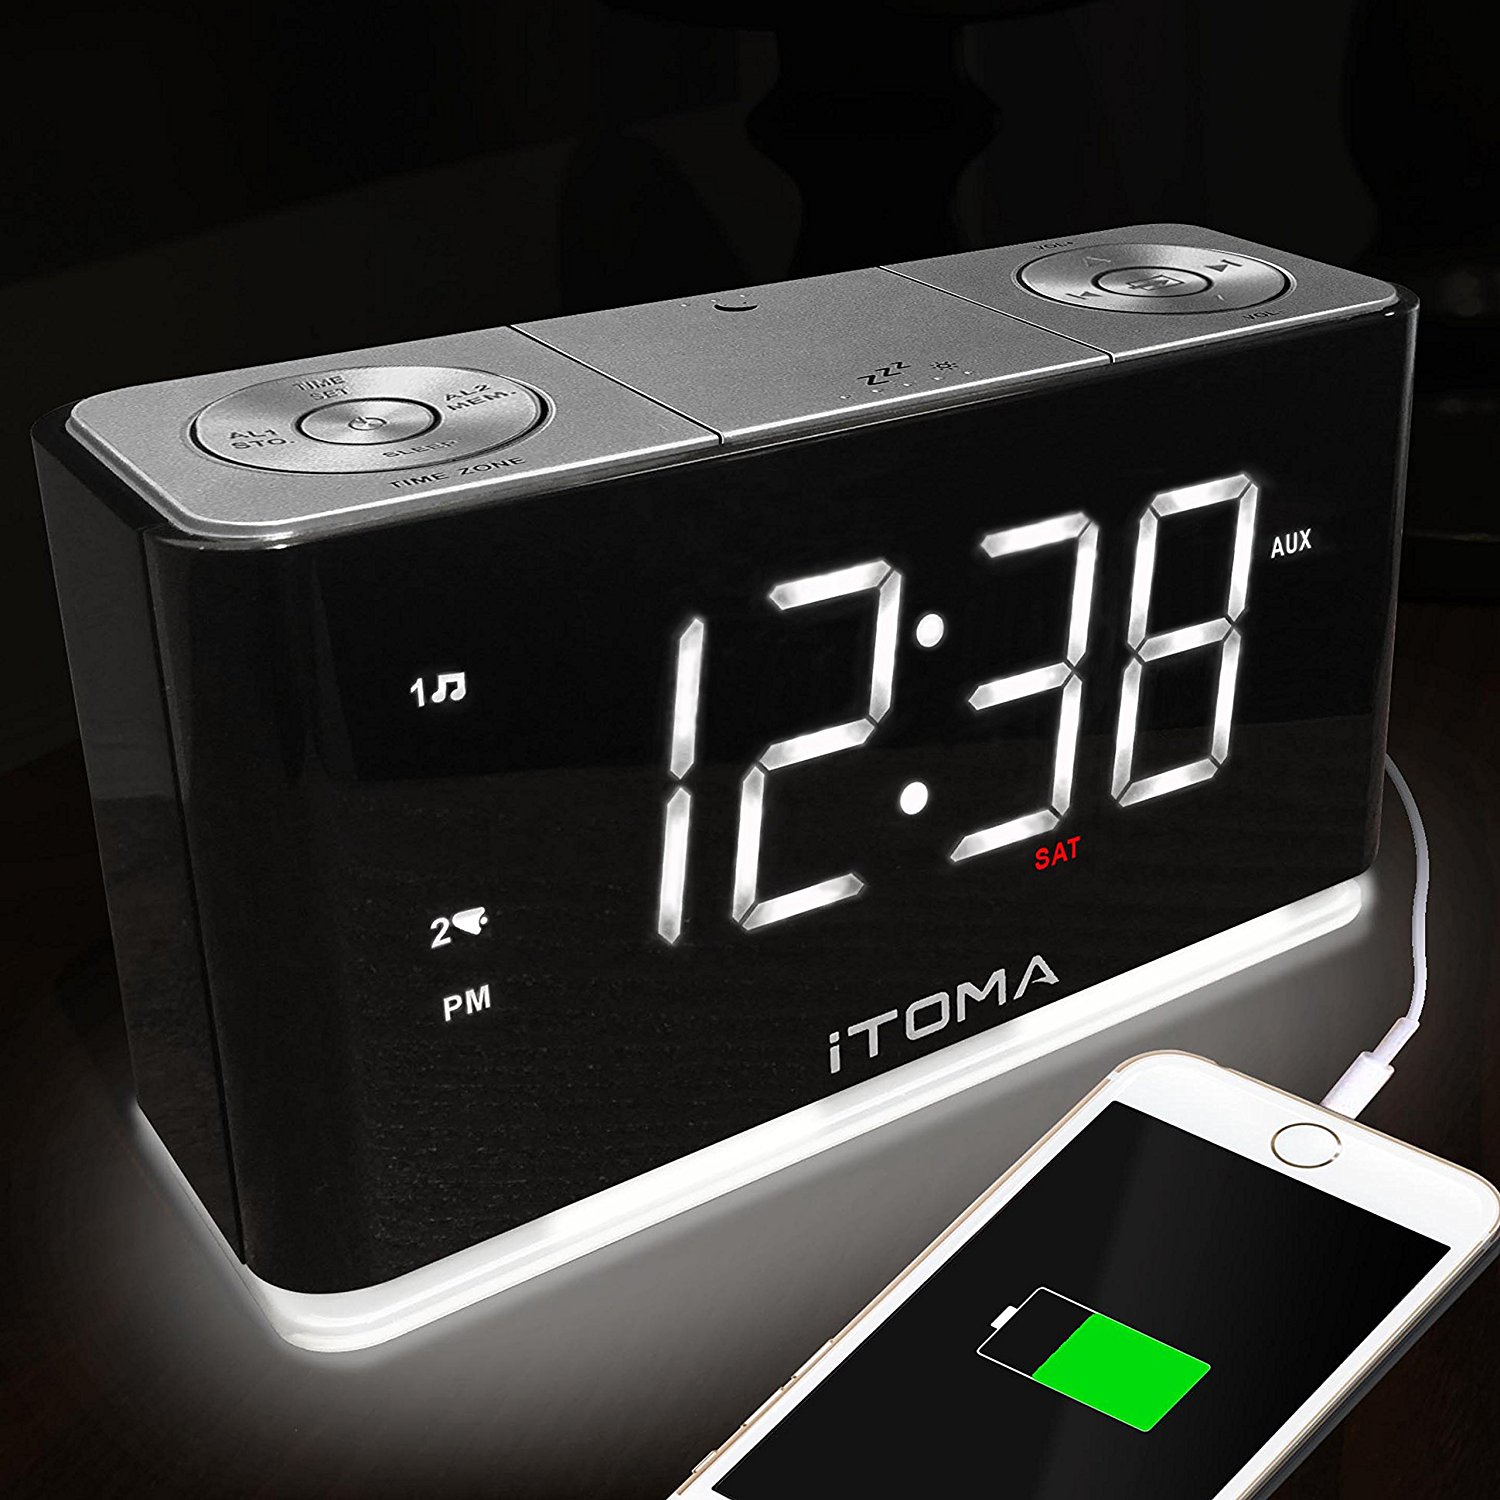 Dildo Alarm Clock